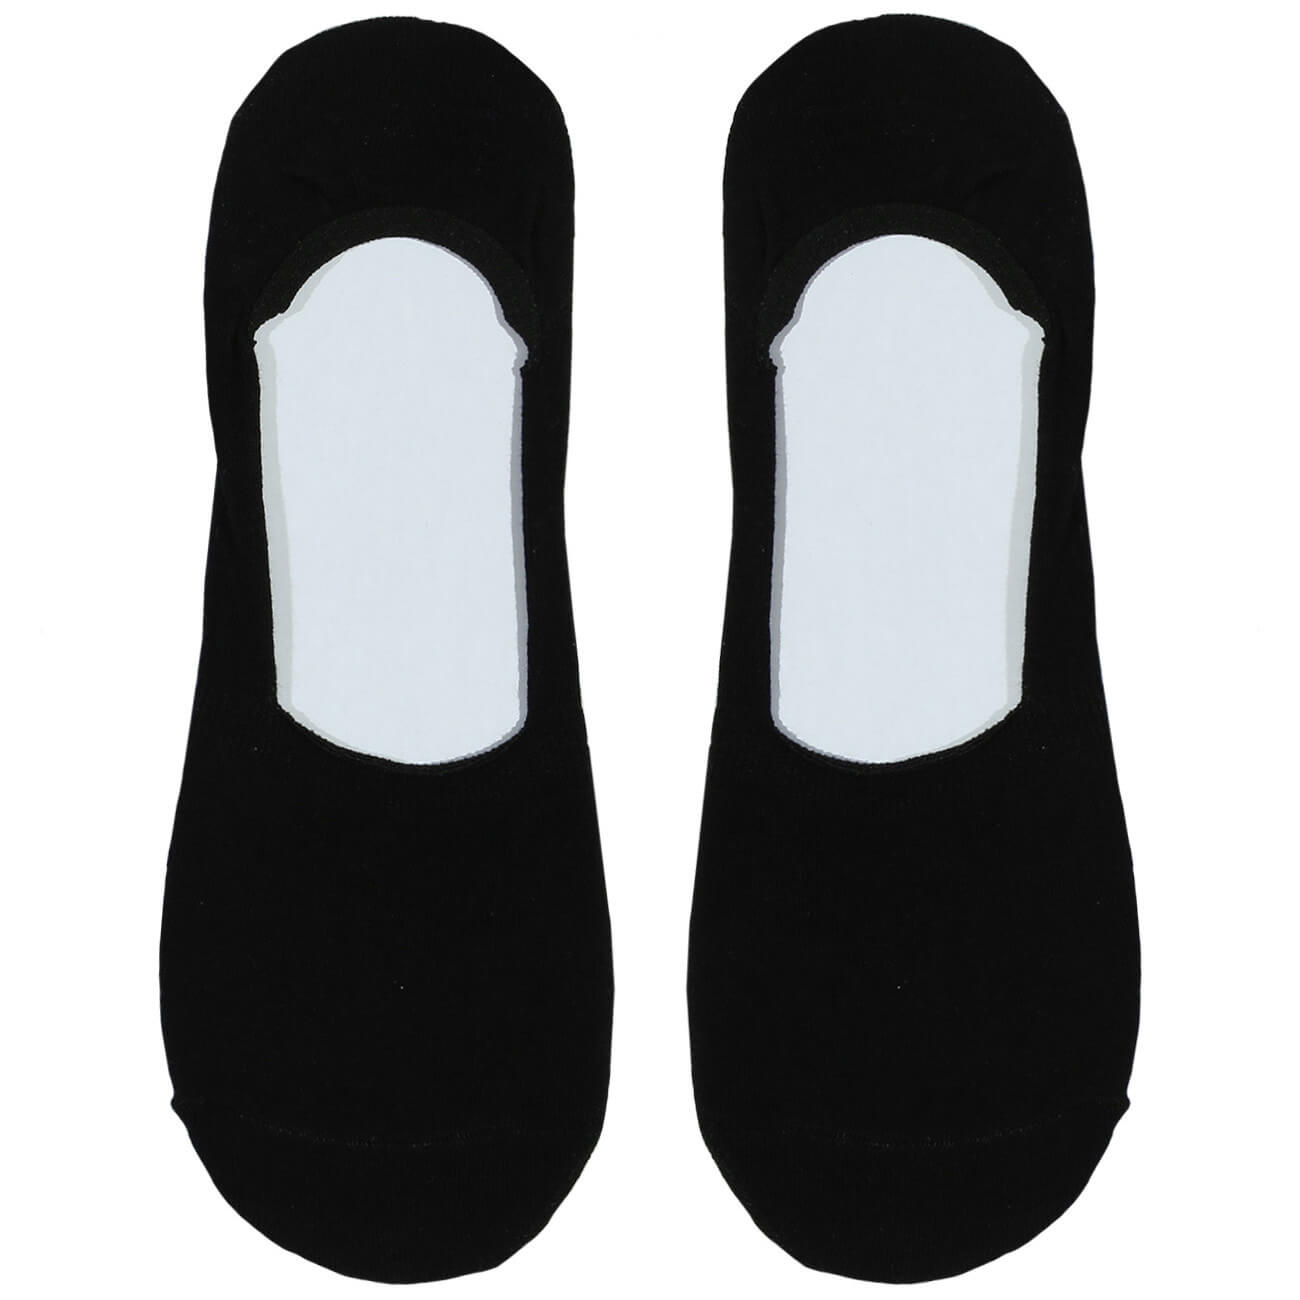 Носки-следки мужские, р. 39-42, хлопок/полиэстер, черные, Basic мужские носки esli